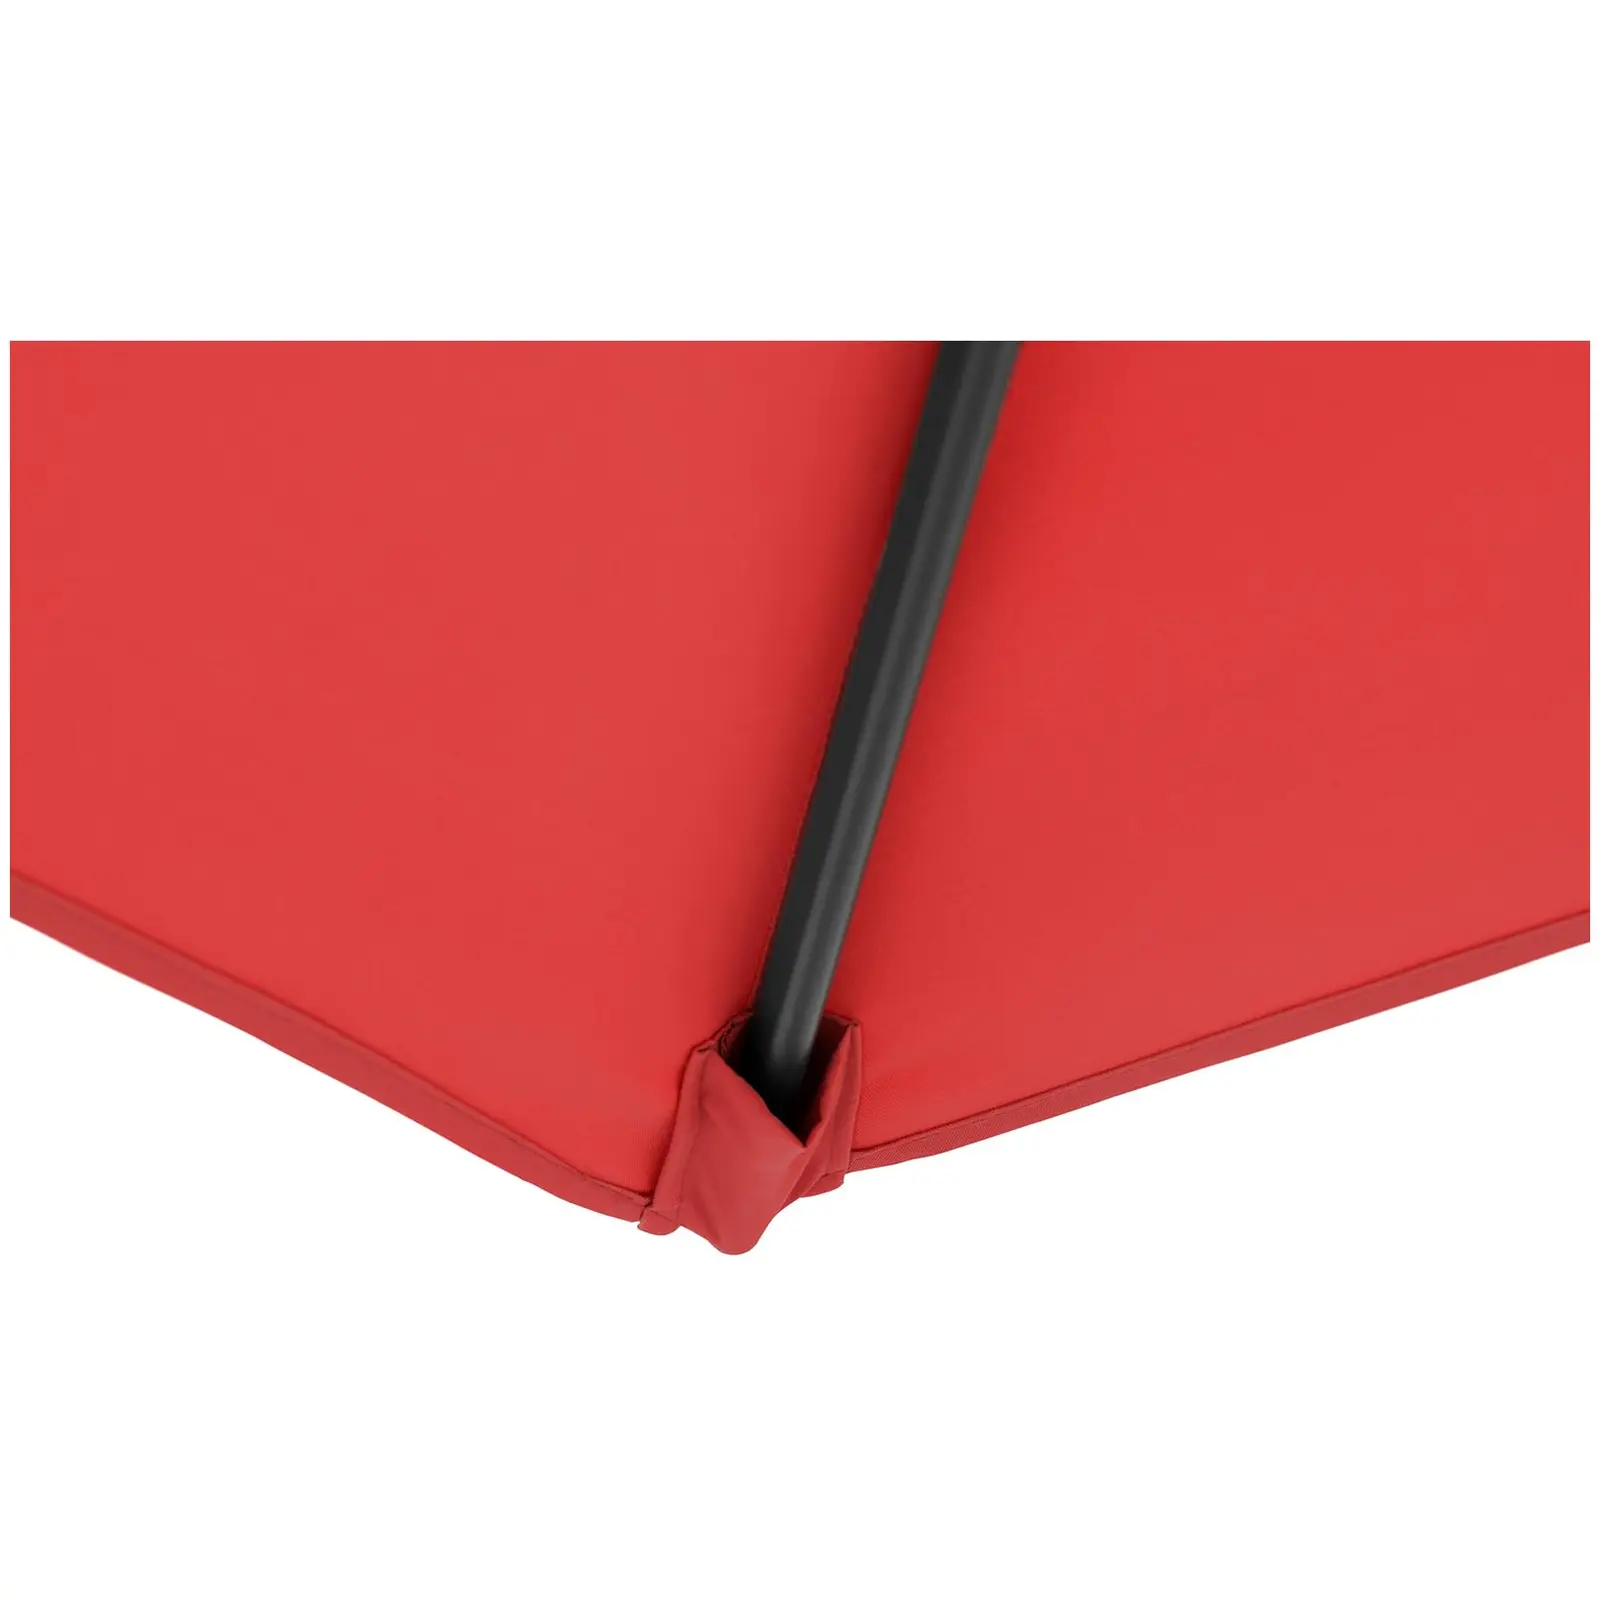 Sombrilla de semáforo - rojo - cuadrada - 250 x 250 cm - inclinable